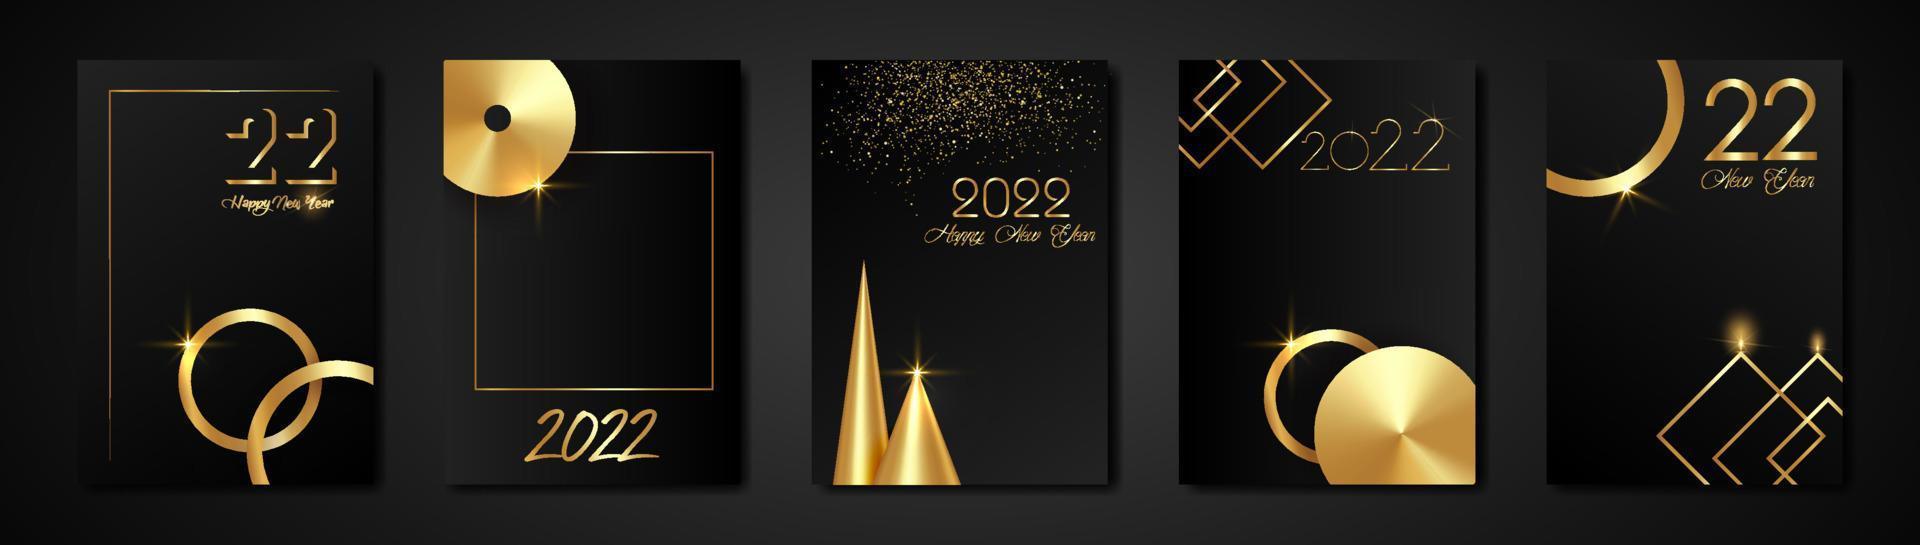 définir des cartes 2022 bonne année texture or, fond moderne noir de luxe doré, éléments pour calendrier et carte de voeux ou invitations de vacances d'hiver sur le thème de noël avec des décorations géométriques vecteur